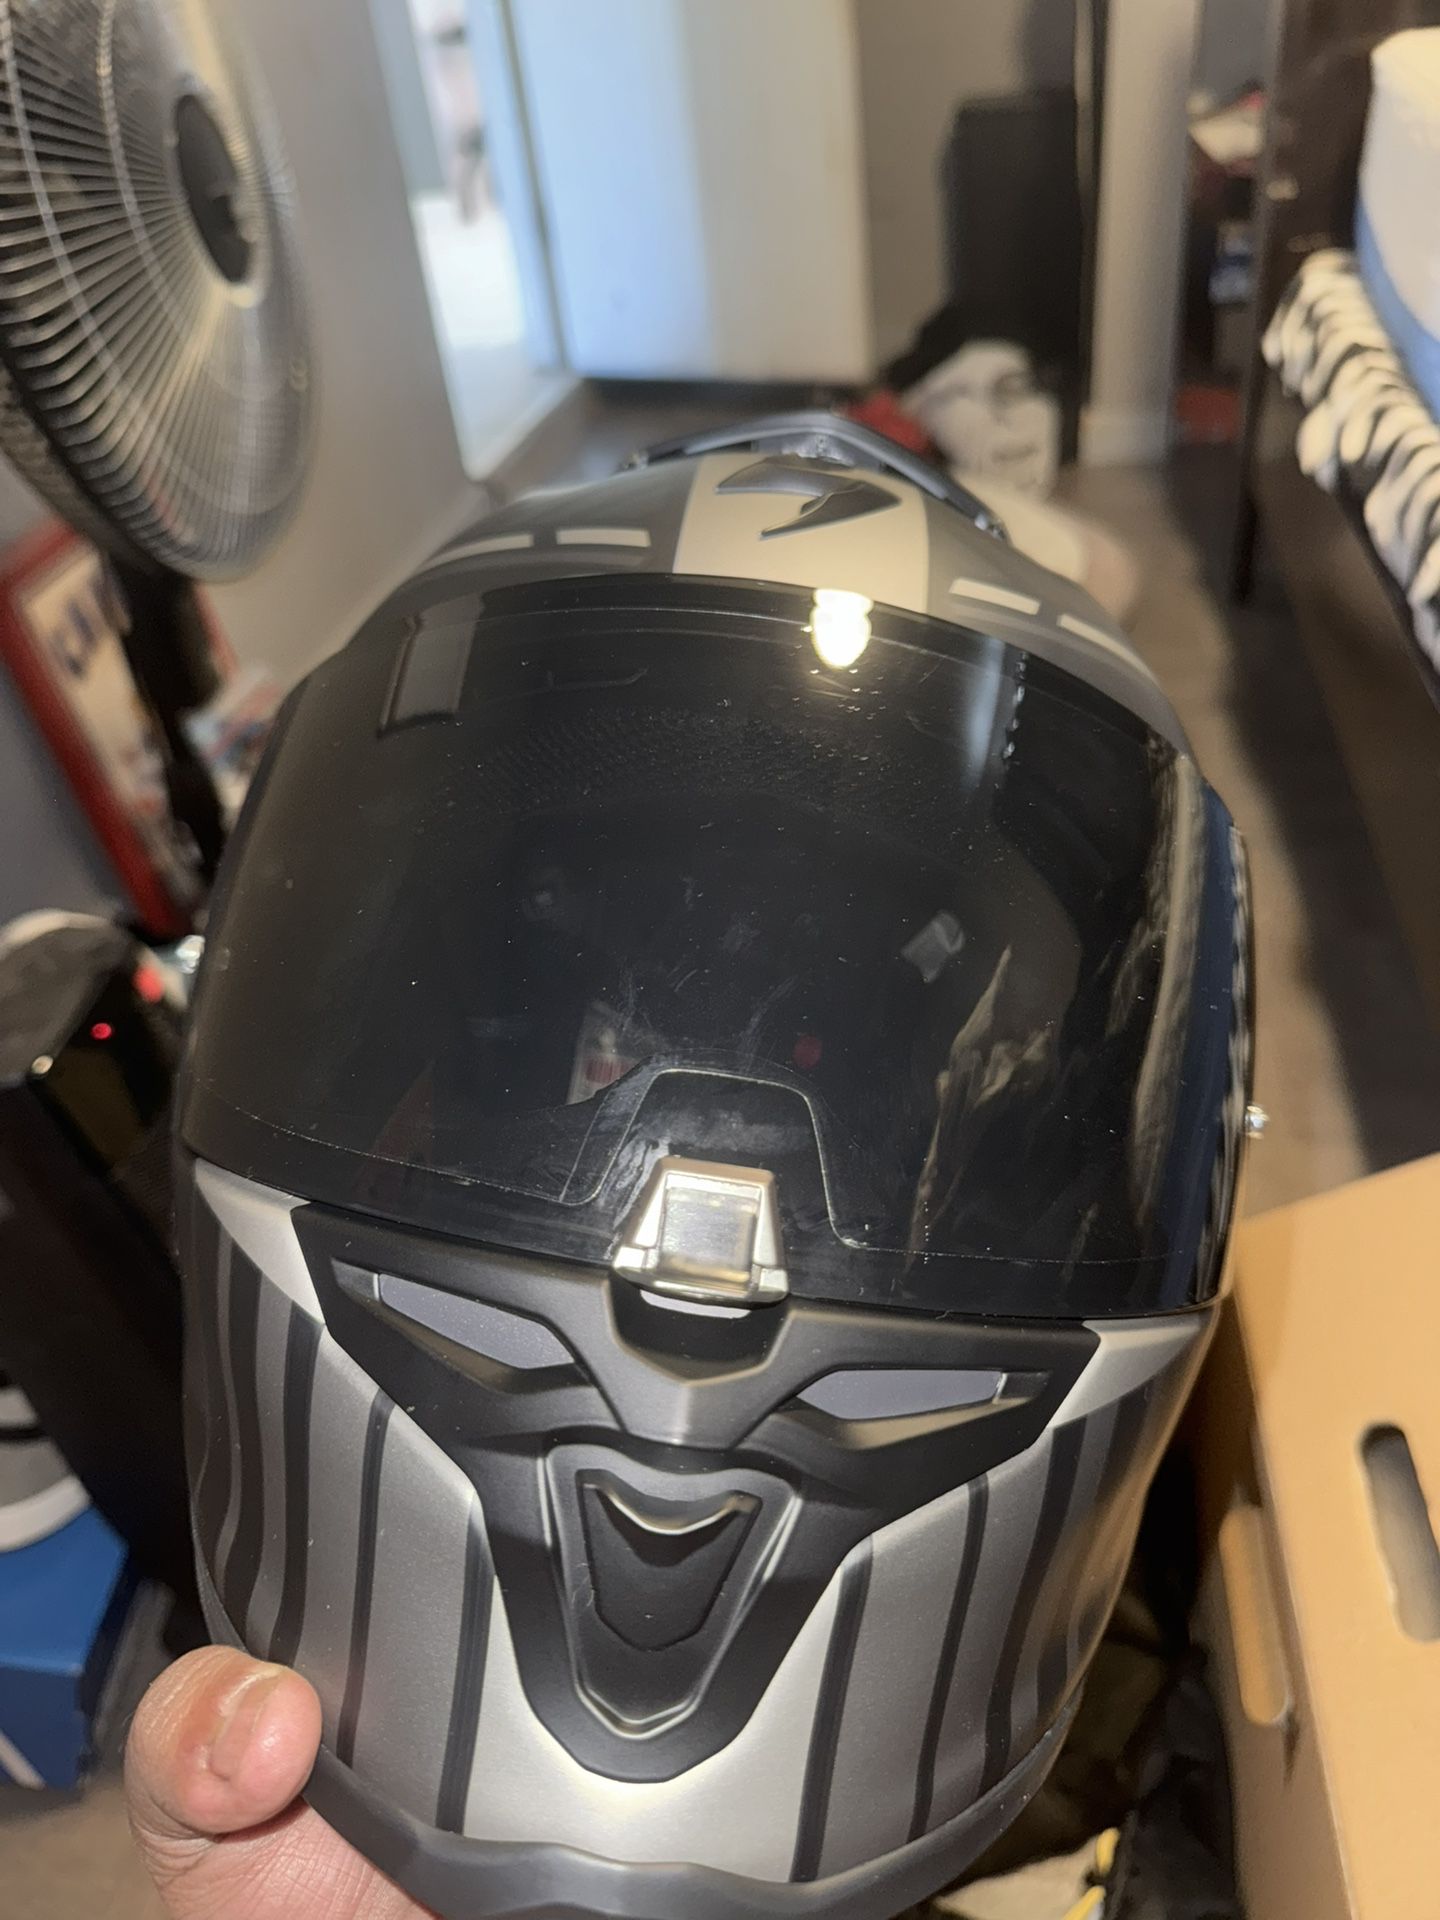 Scorpion EXO-R1 Air Juice Helmet